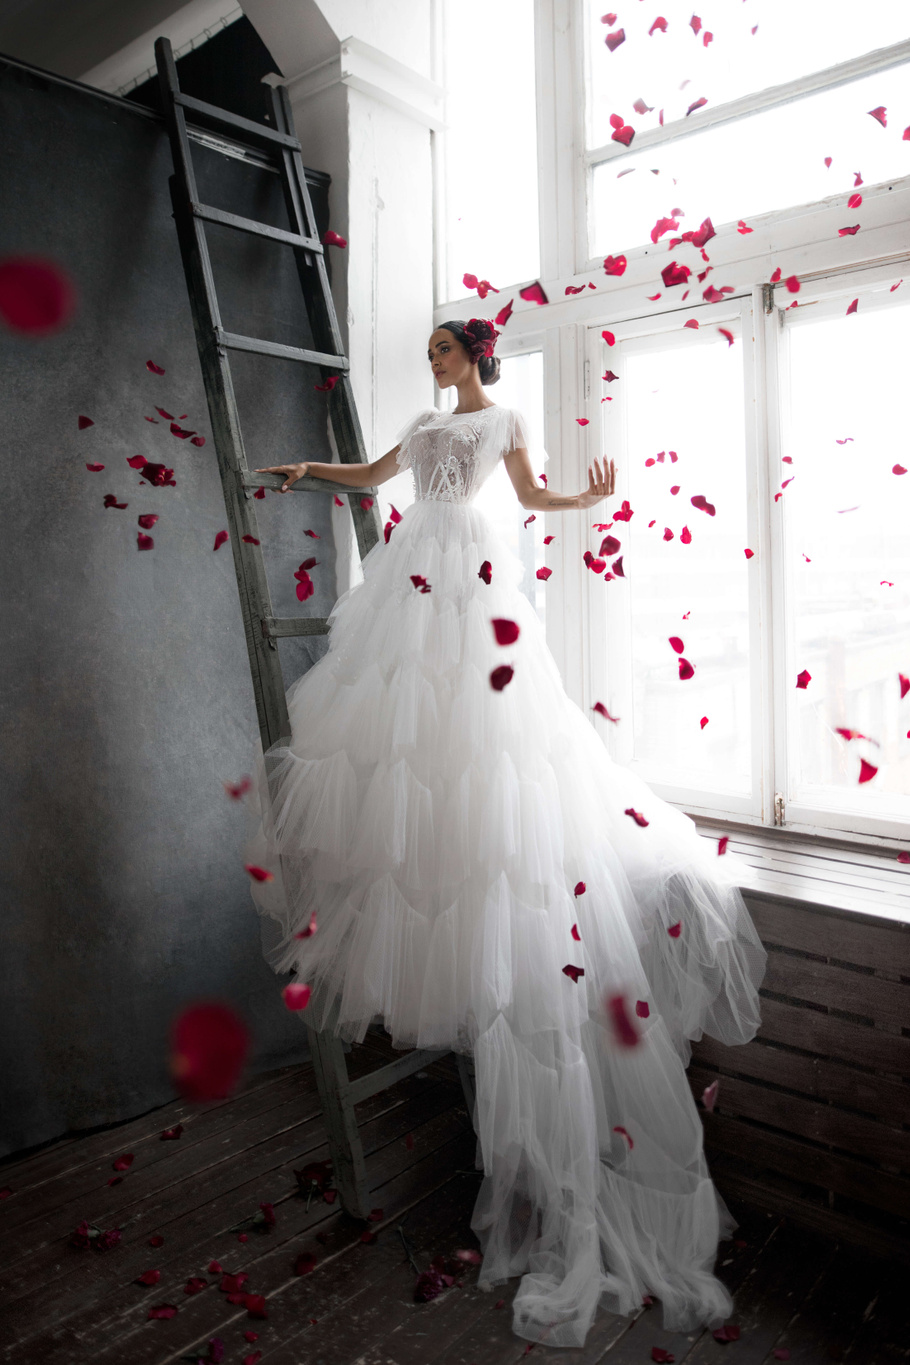 Купить свадебное платье «Лоренсо» Бламмо Биамо из коллекции Нимфа 2020 года в Санкт-Петербурге